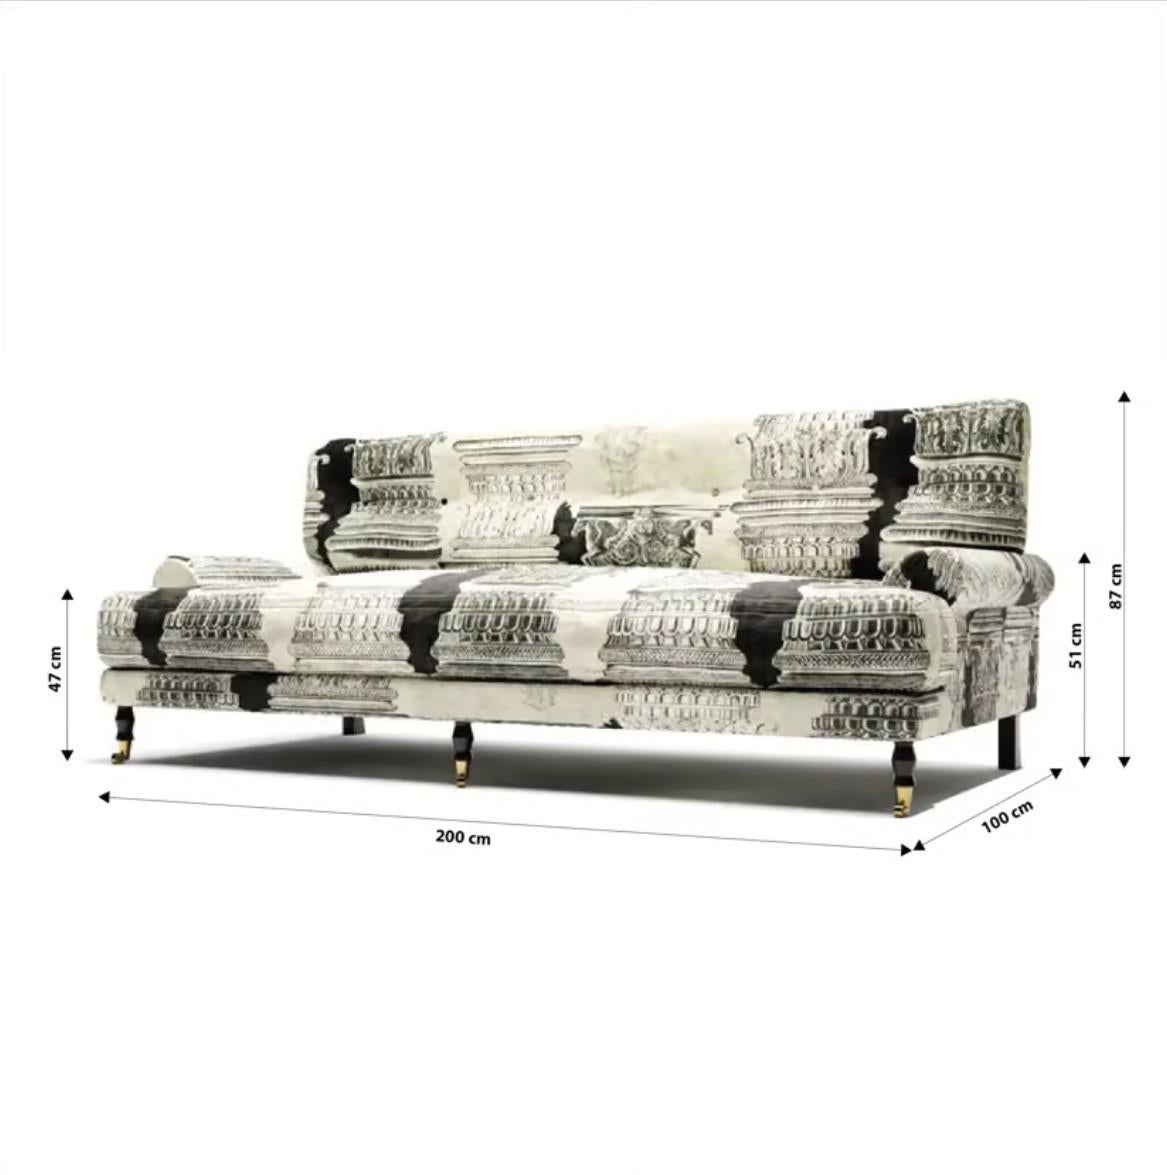 Lucania Jahrhunderte Sofa
Erhöhen Sie Ihr Wohnzimmer zu neuen Höhen der Grandeur und Eleganz mit dem fesselnden Lucania Centuries Sofa. Seine imposante Präsenz, sein raffiniertes Design und seine unendliche Eleganz machen ihn zu einem auffälligen